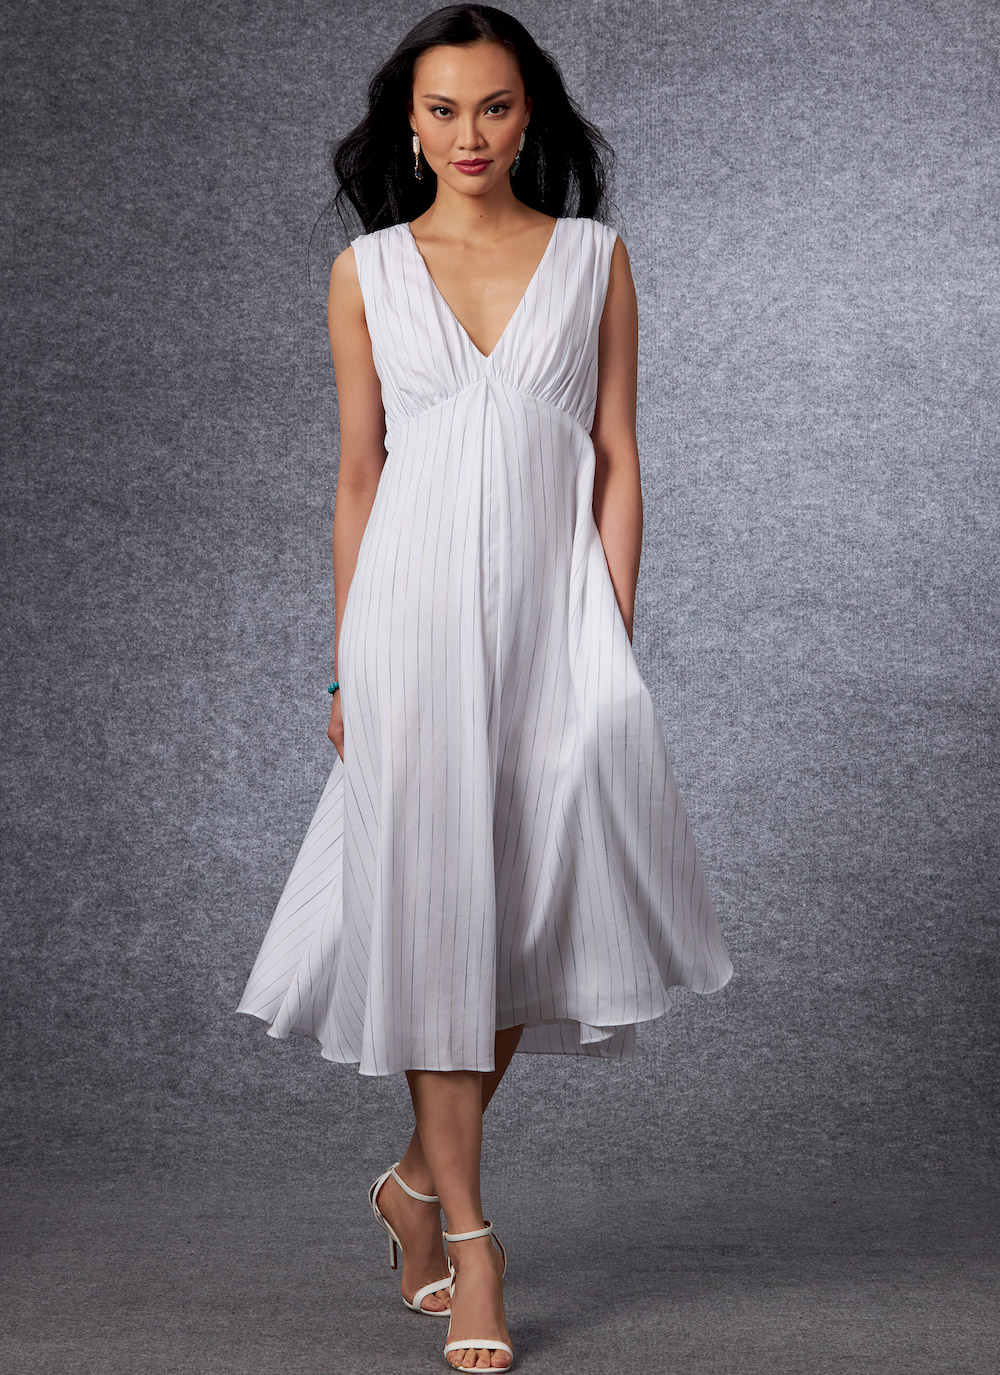 Vogue® Patterns Papierschnittmuster Kleid V1699